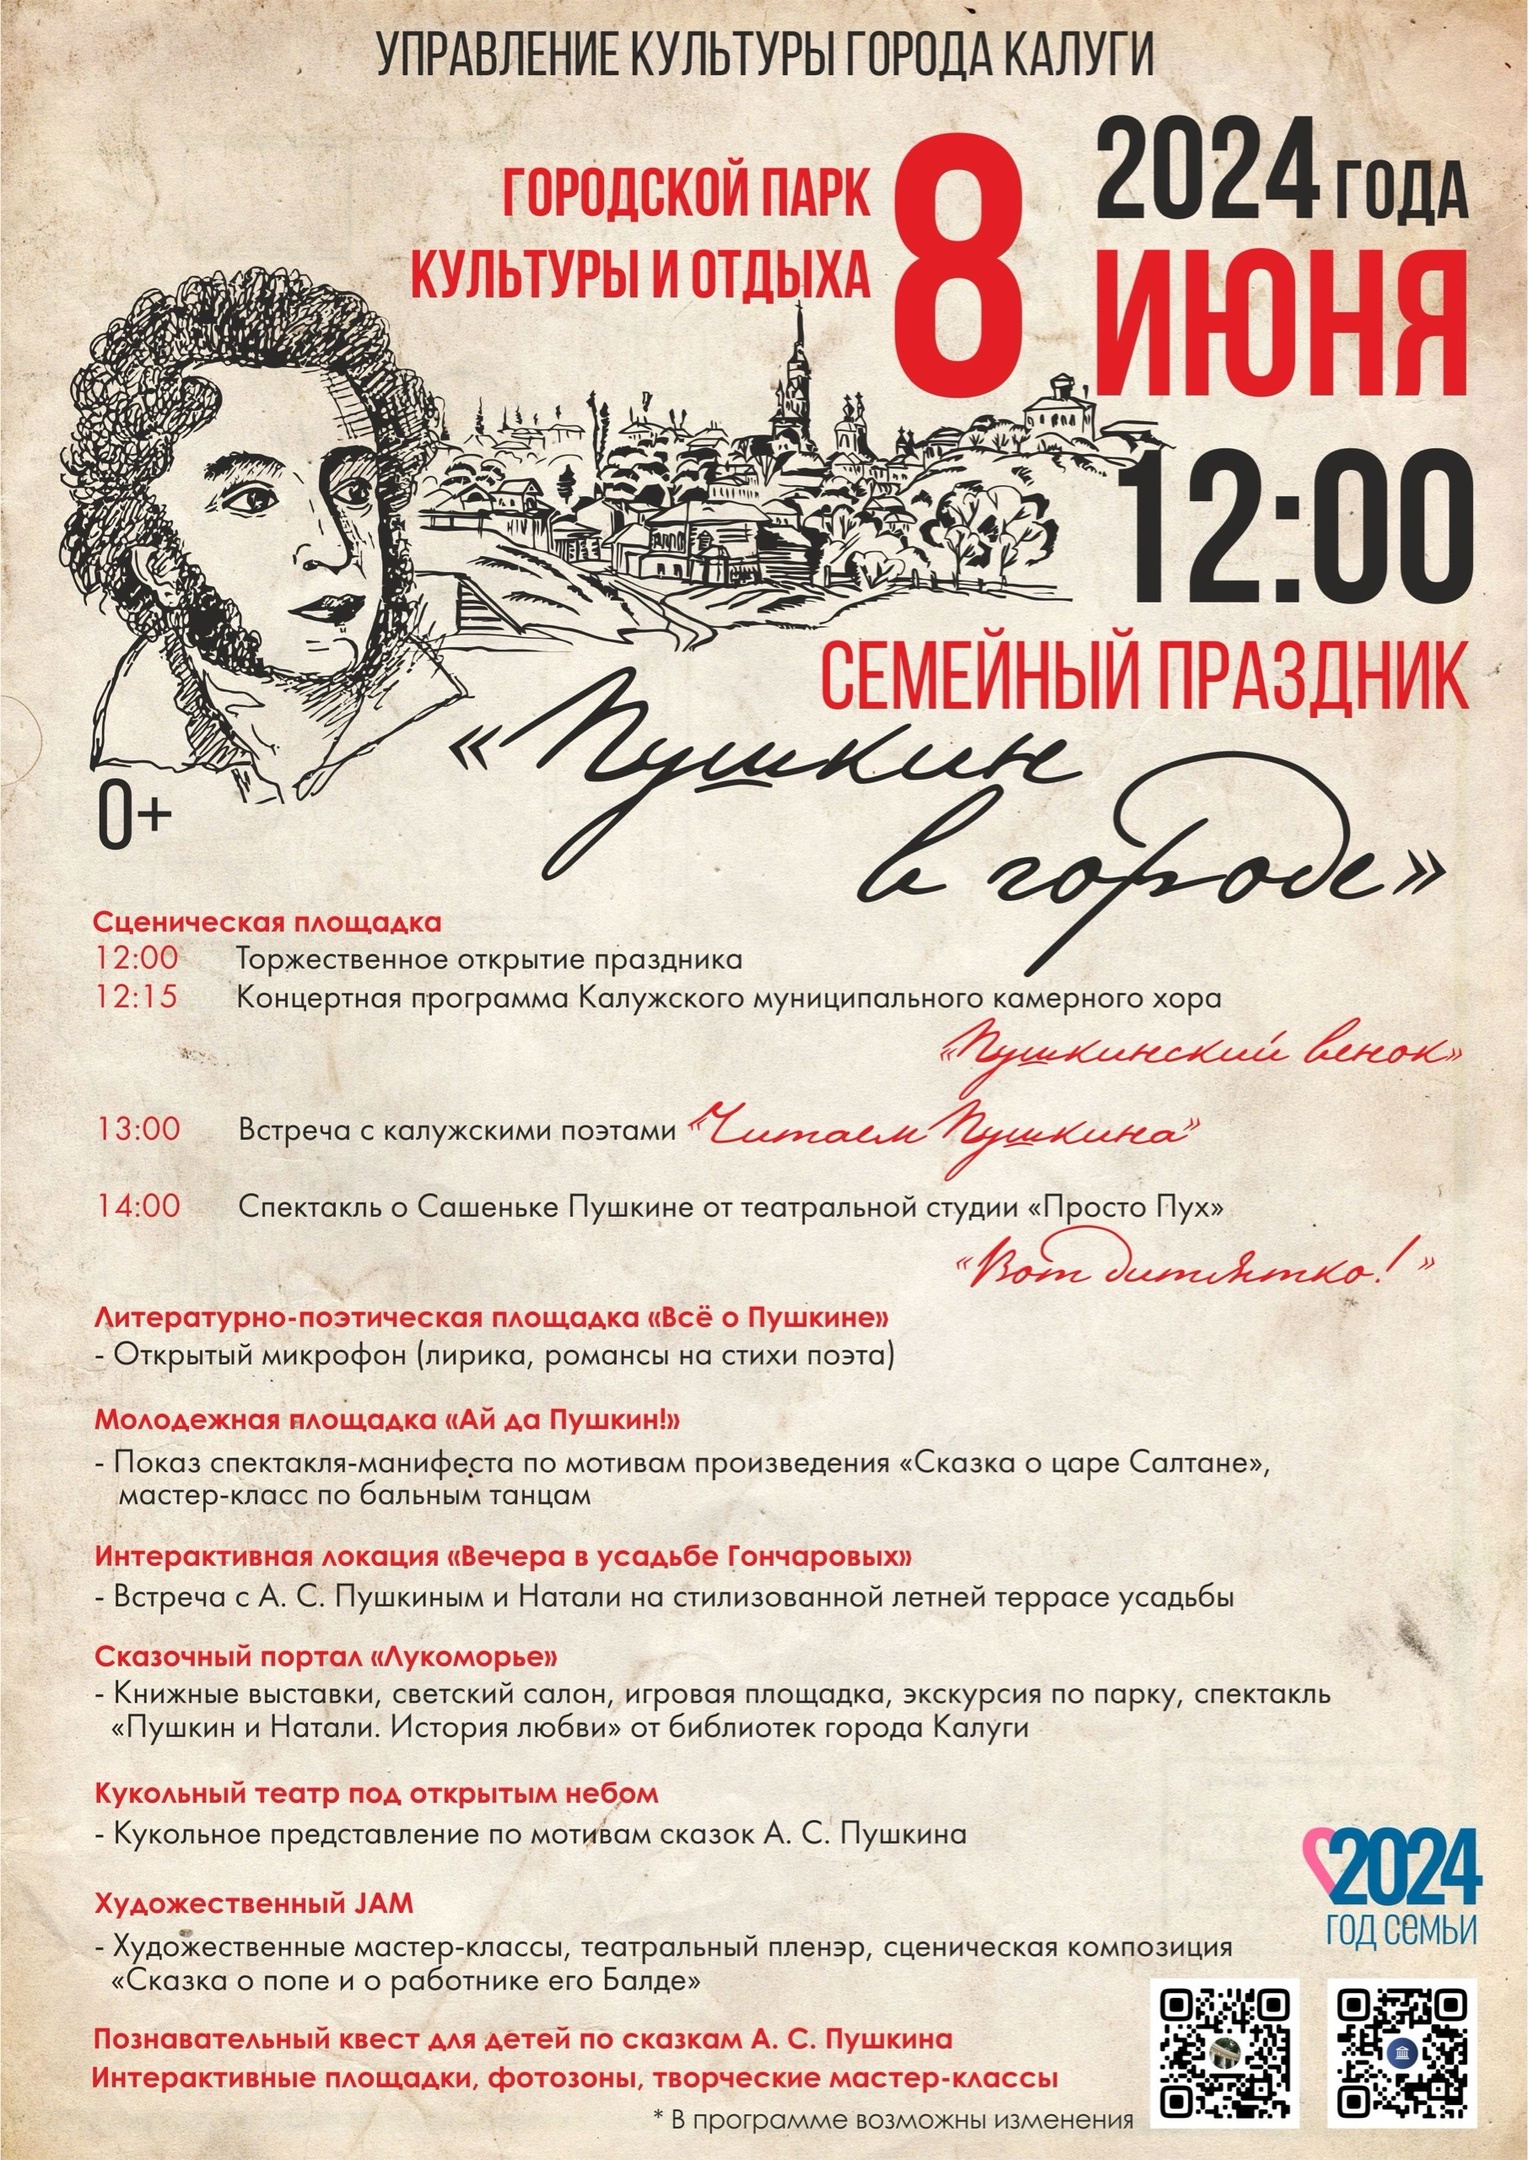 6 июня исполнилось 225 лет со дня рождения Александра Сергеевича Пушкина